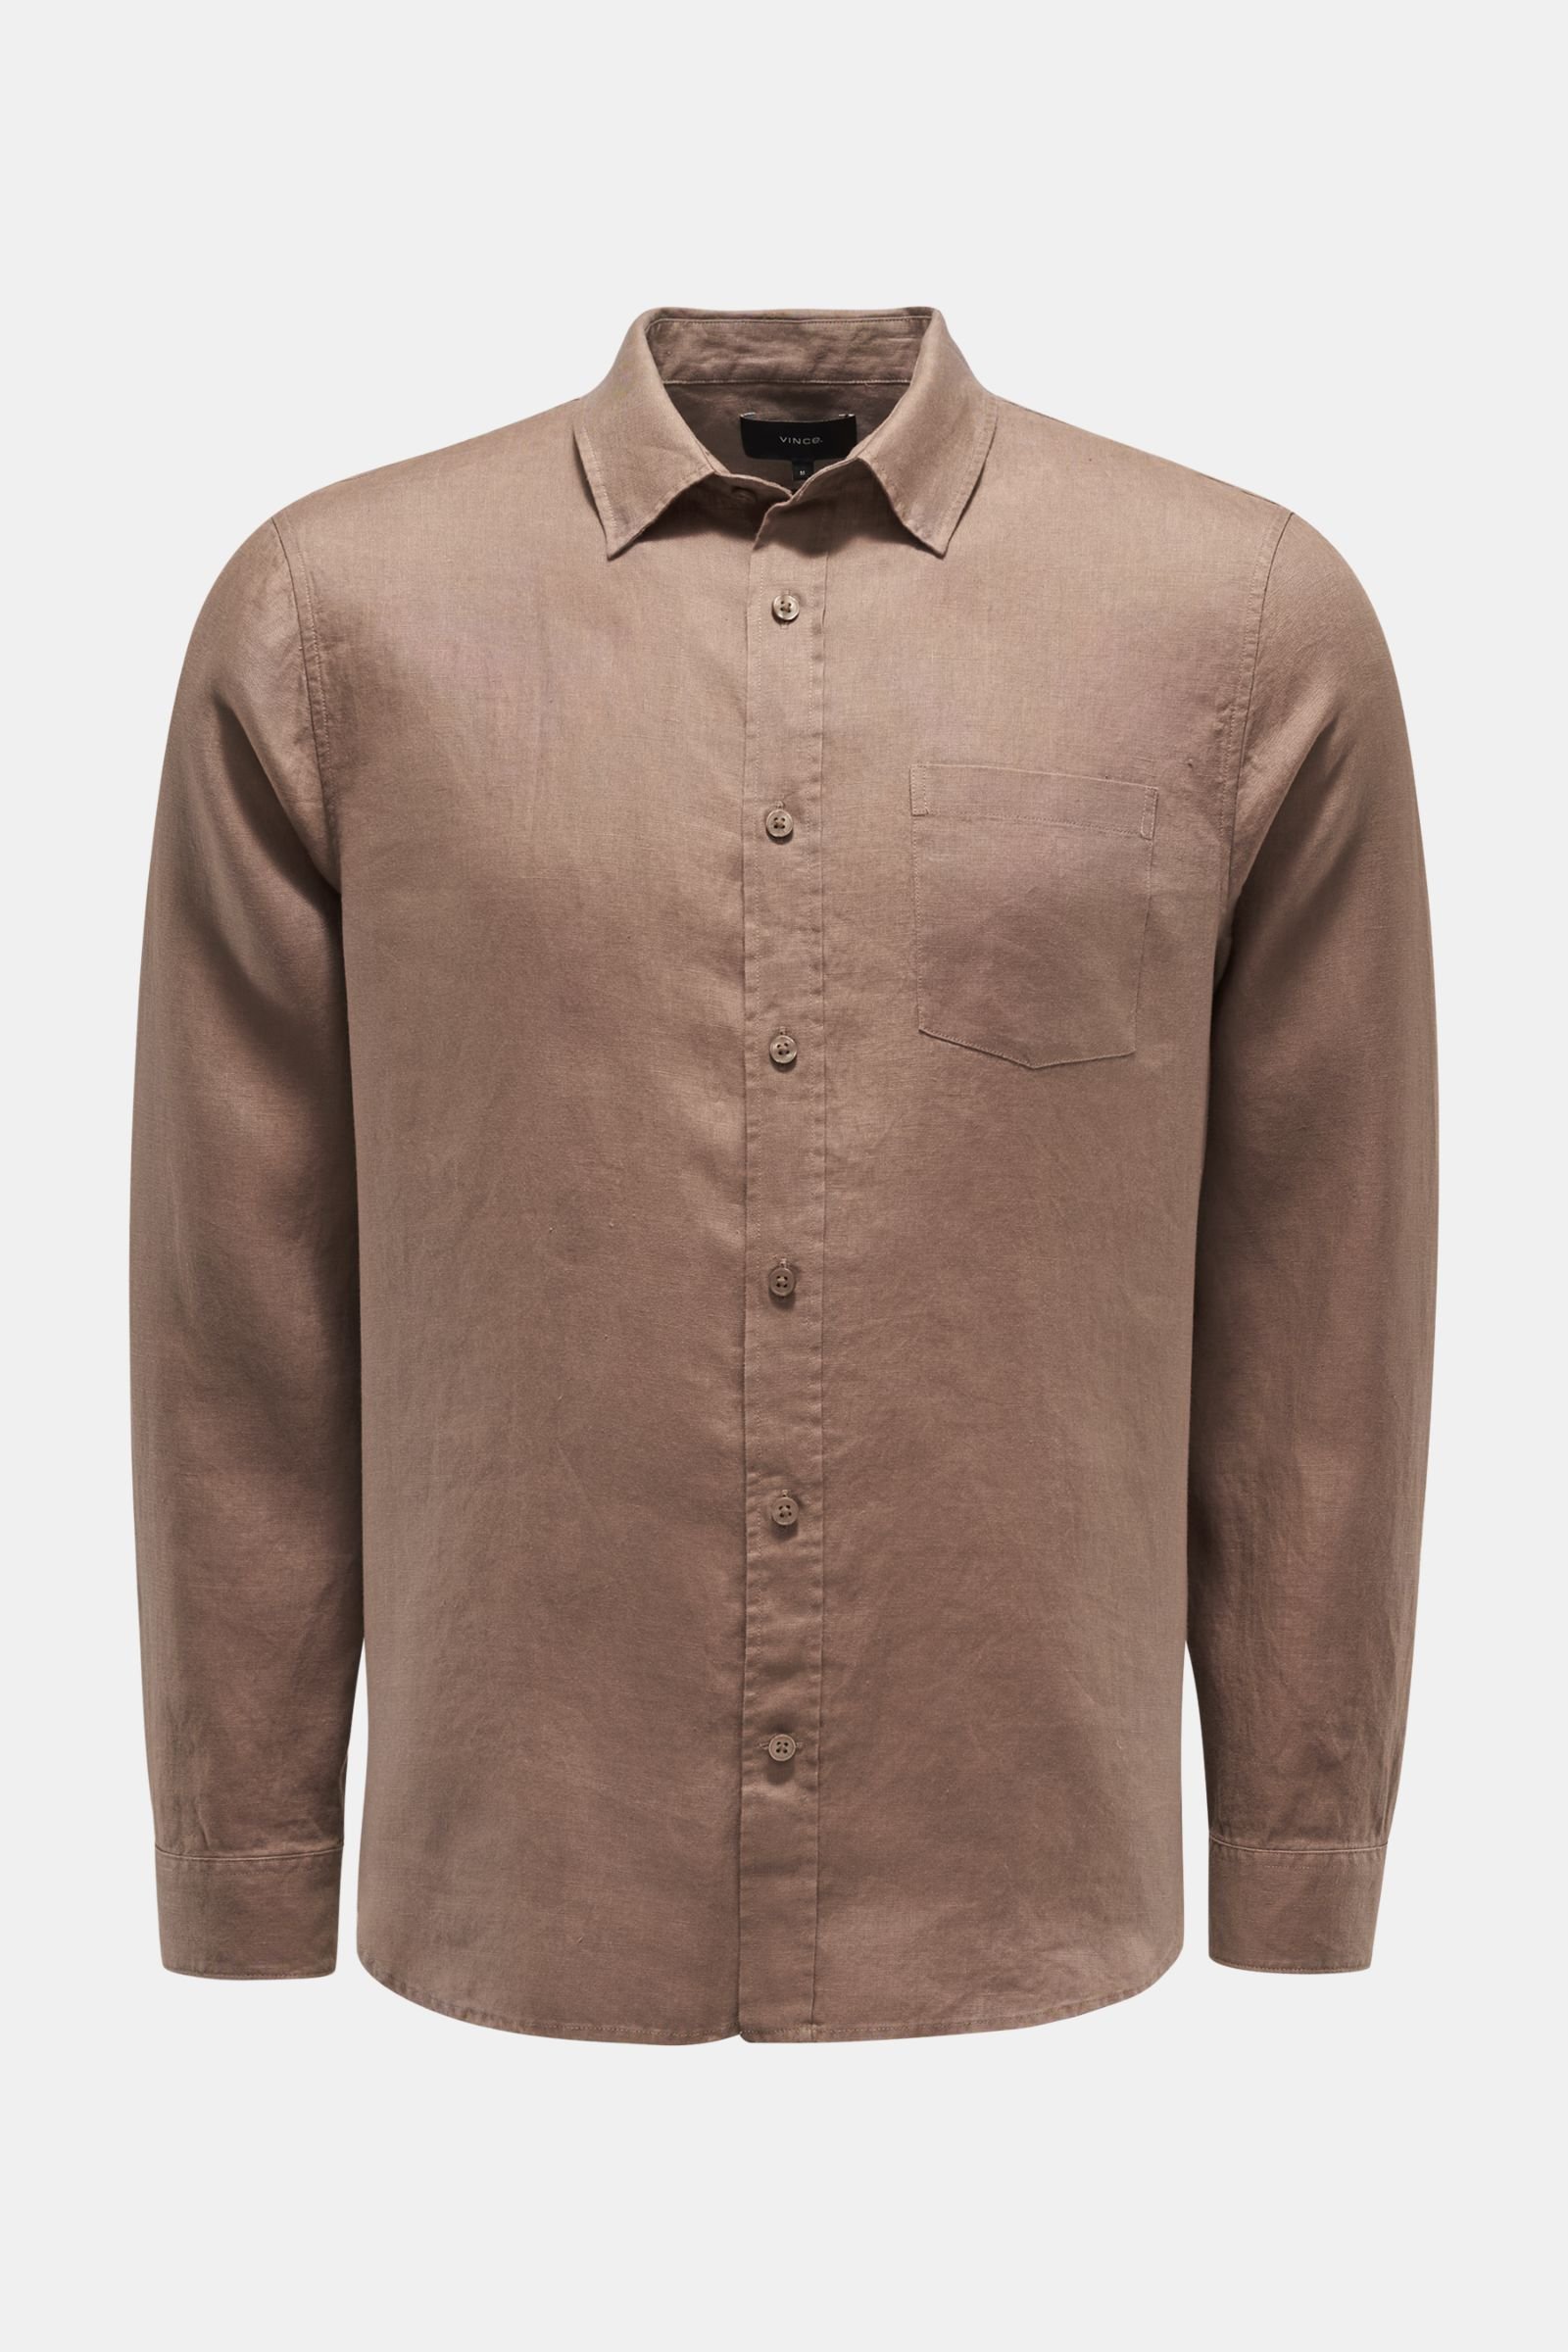 Linen shirt narrow collar brown